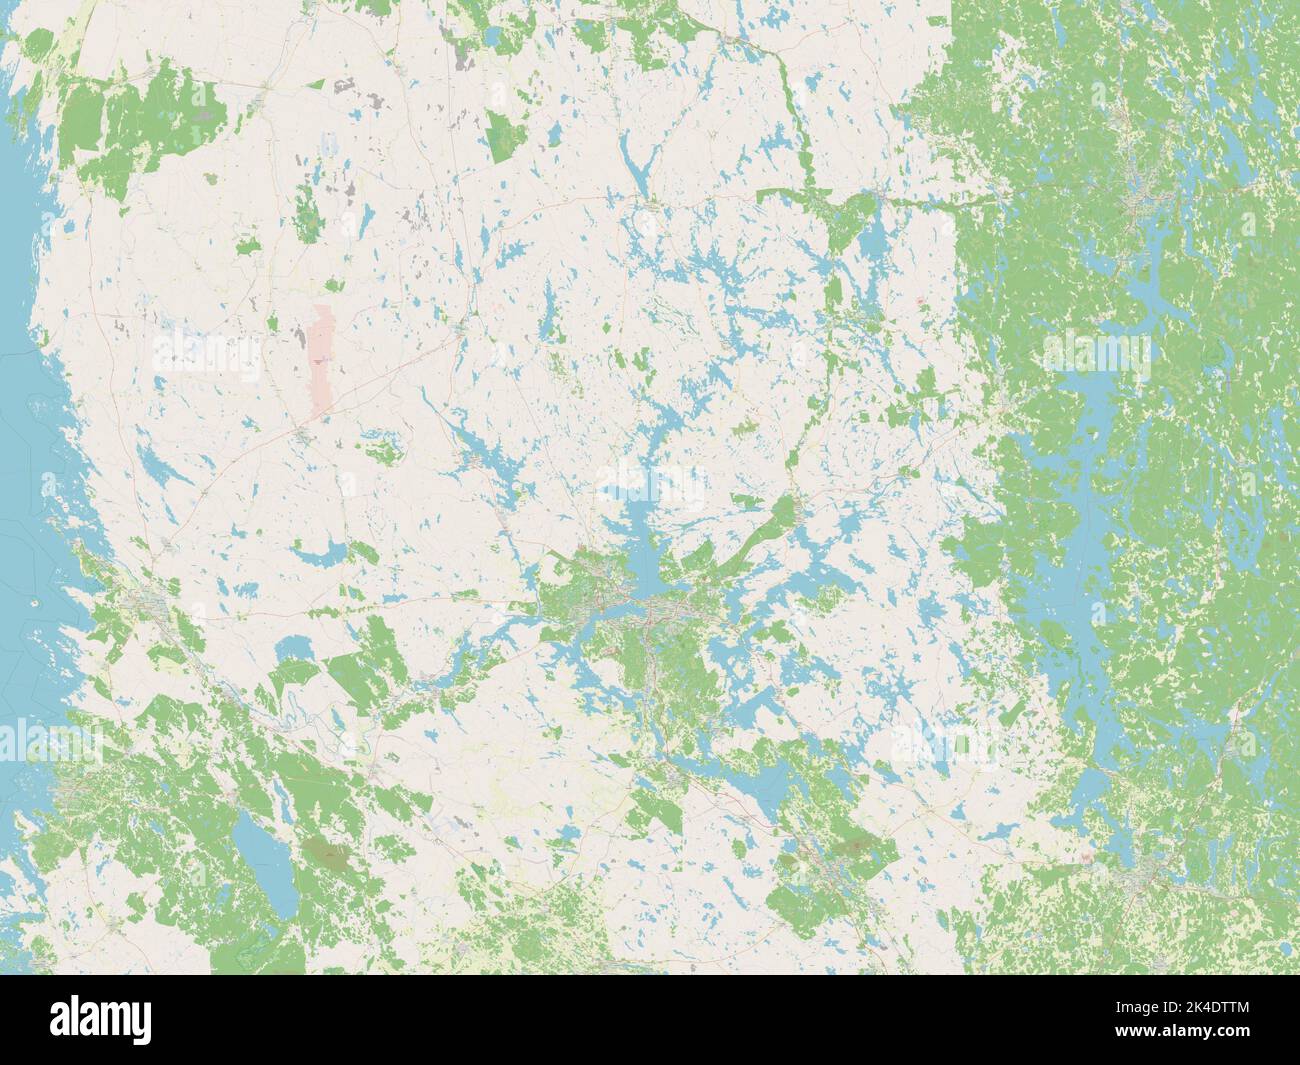 Pirkanmaa, region of Finland. Open Street Map Stock Photo